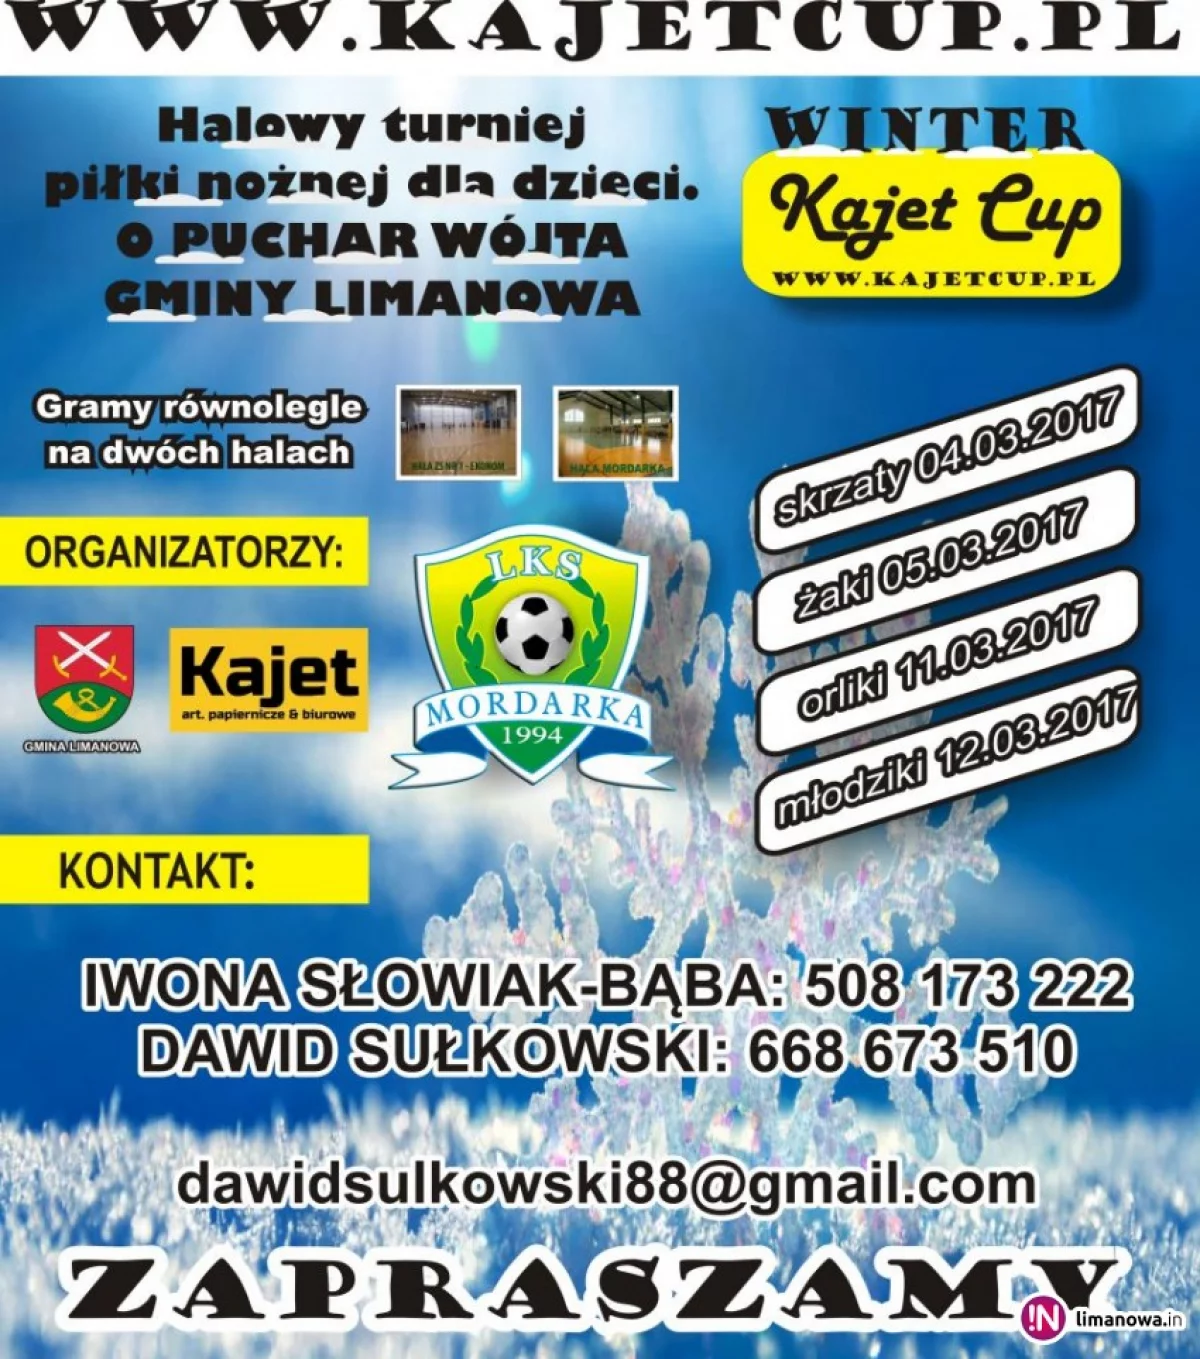 Już w najbliższy weekend startuje turniej piłki nożnej Winter Kajet Cup!